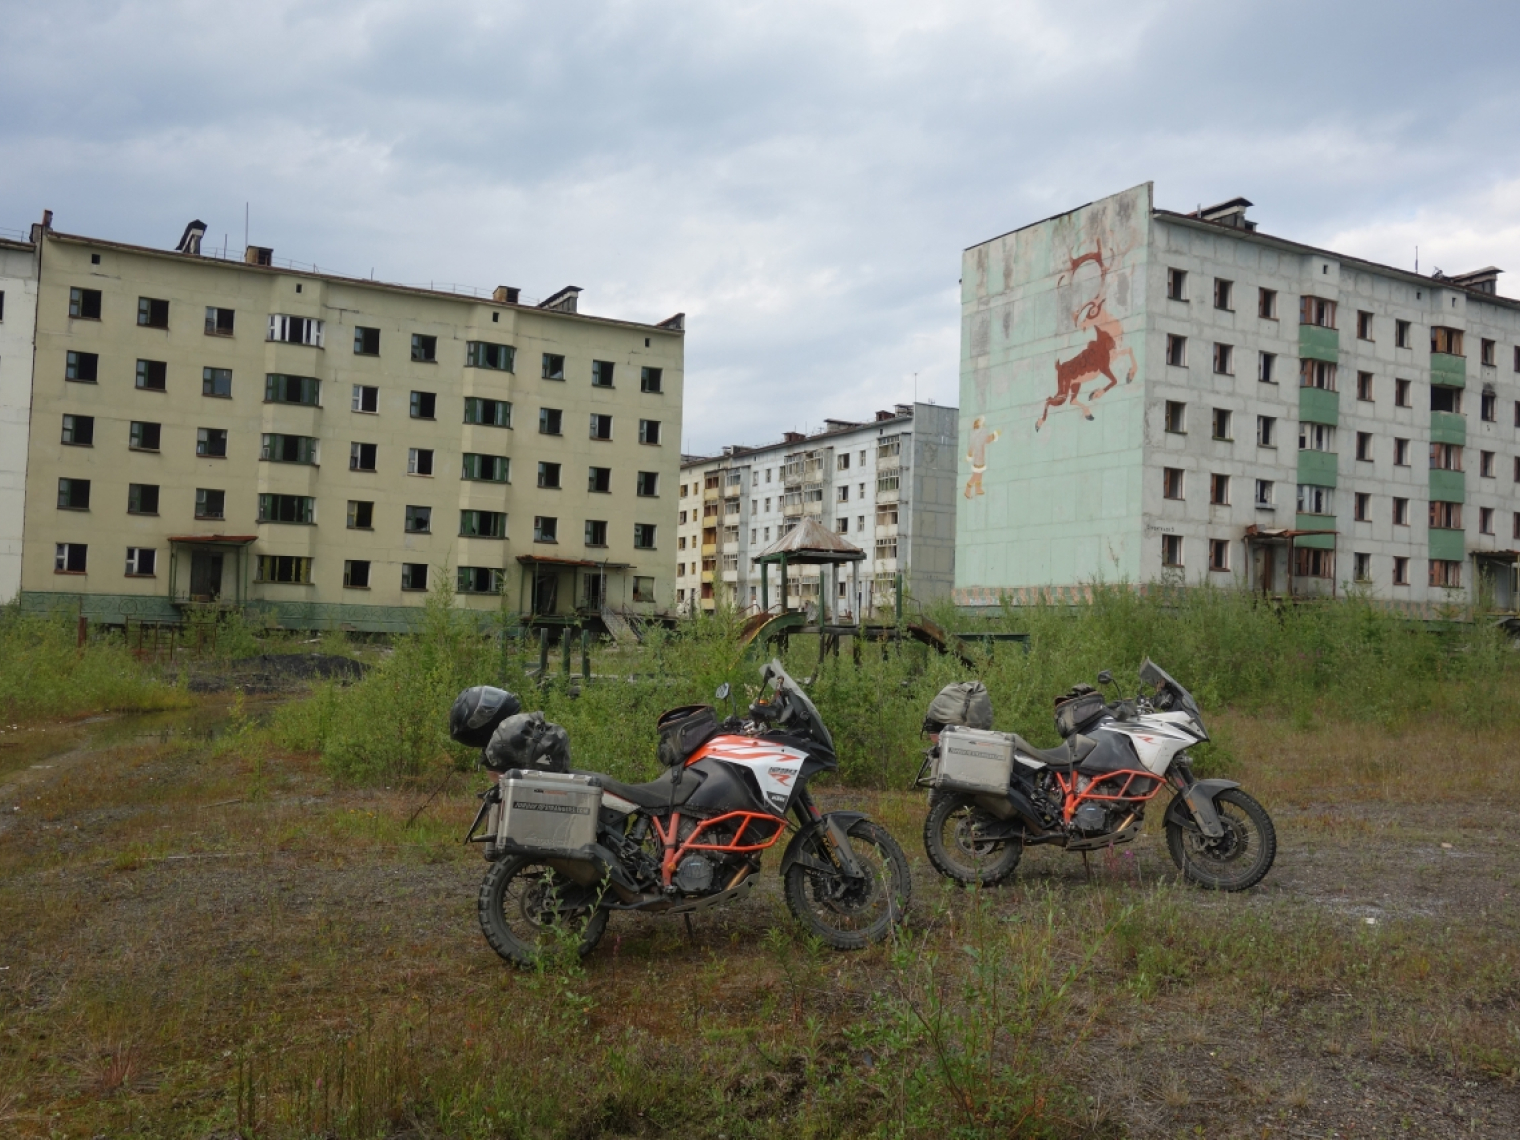 Роуд-трип на мотоциклах по трассе «Колыма». В городе Кадыкчан © Thies and Momme Сlausen / Torque to strangers